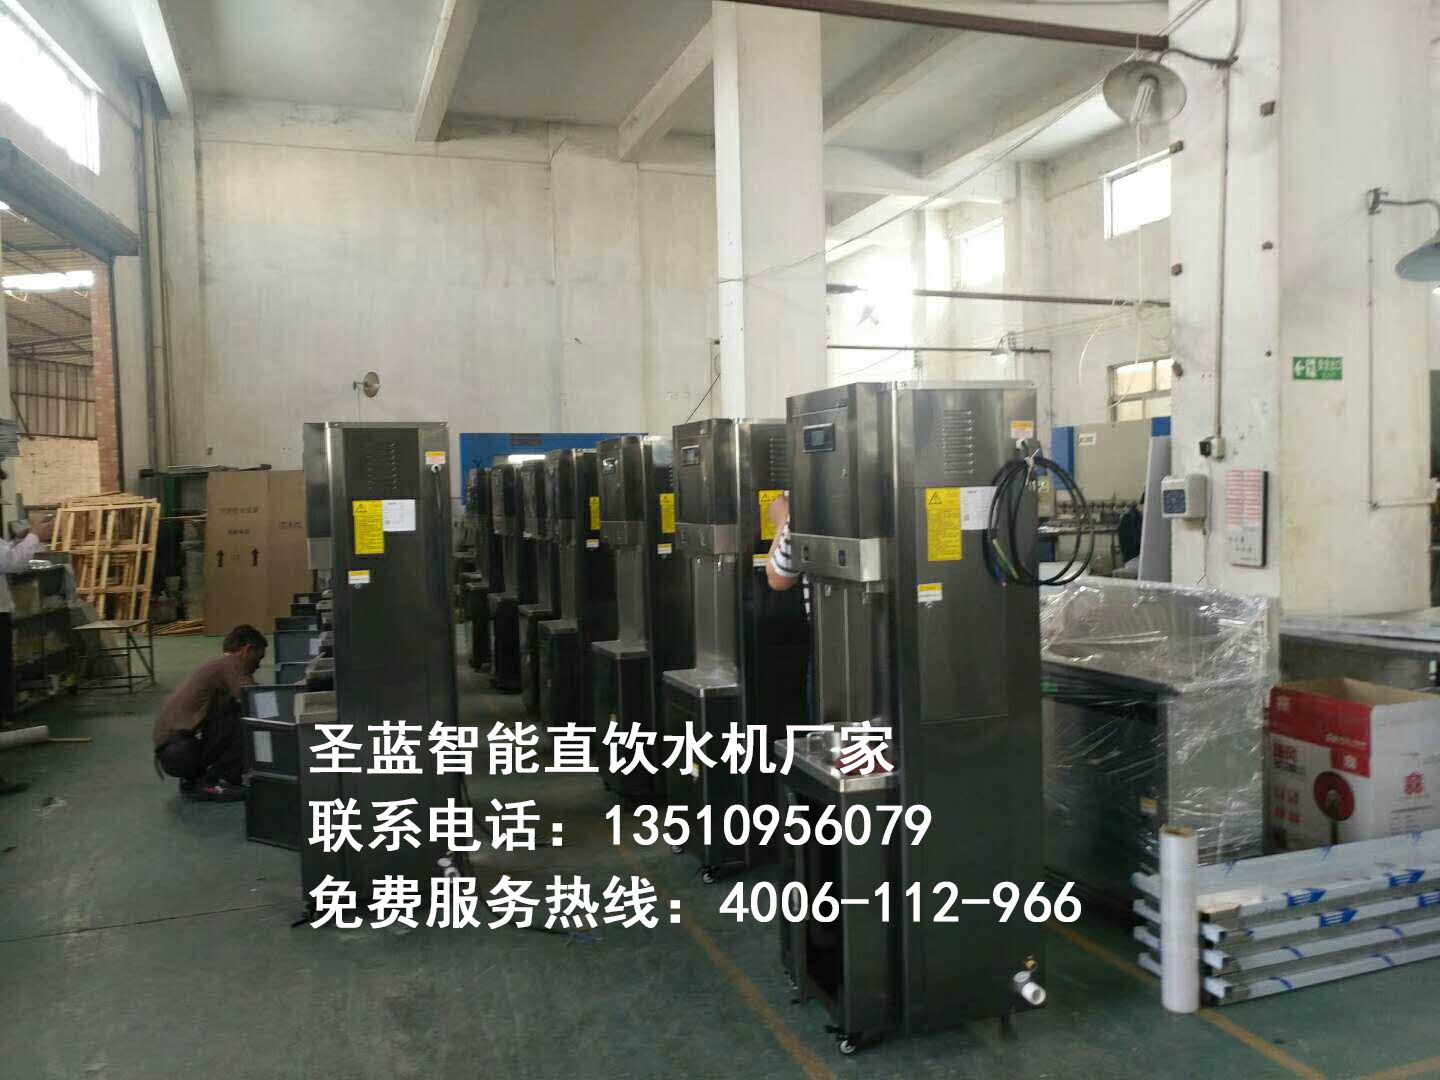 河北省学校饮水机生产厂家哪家好